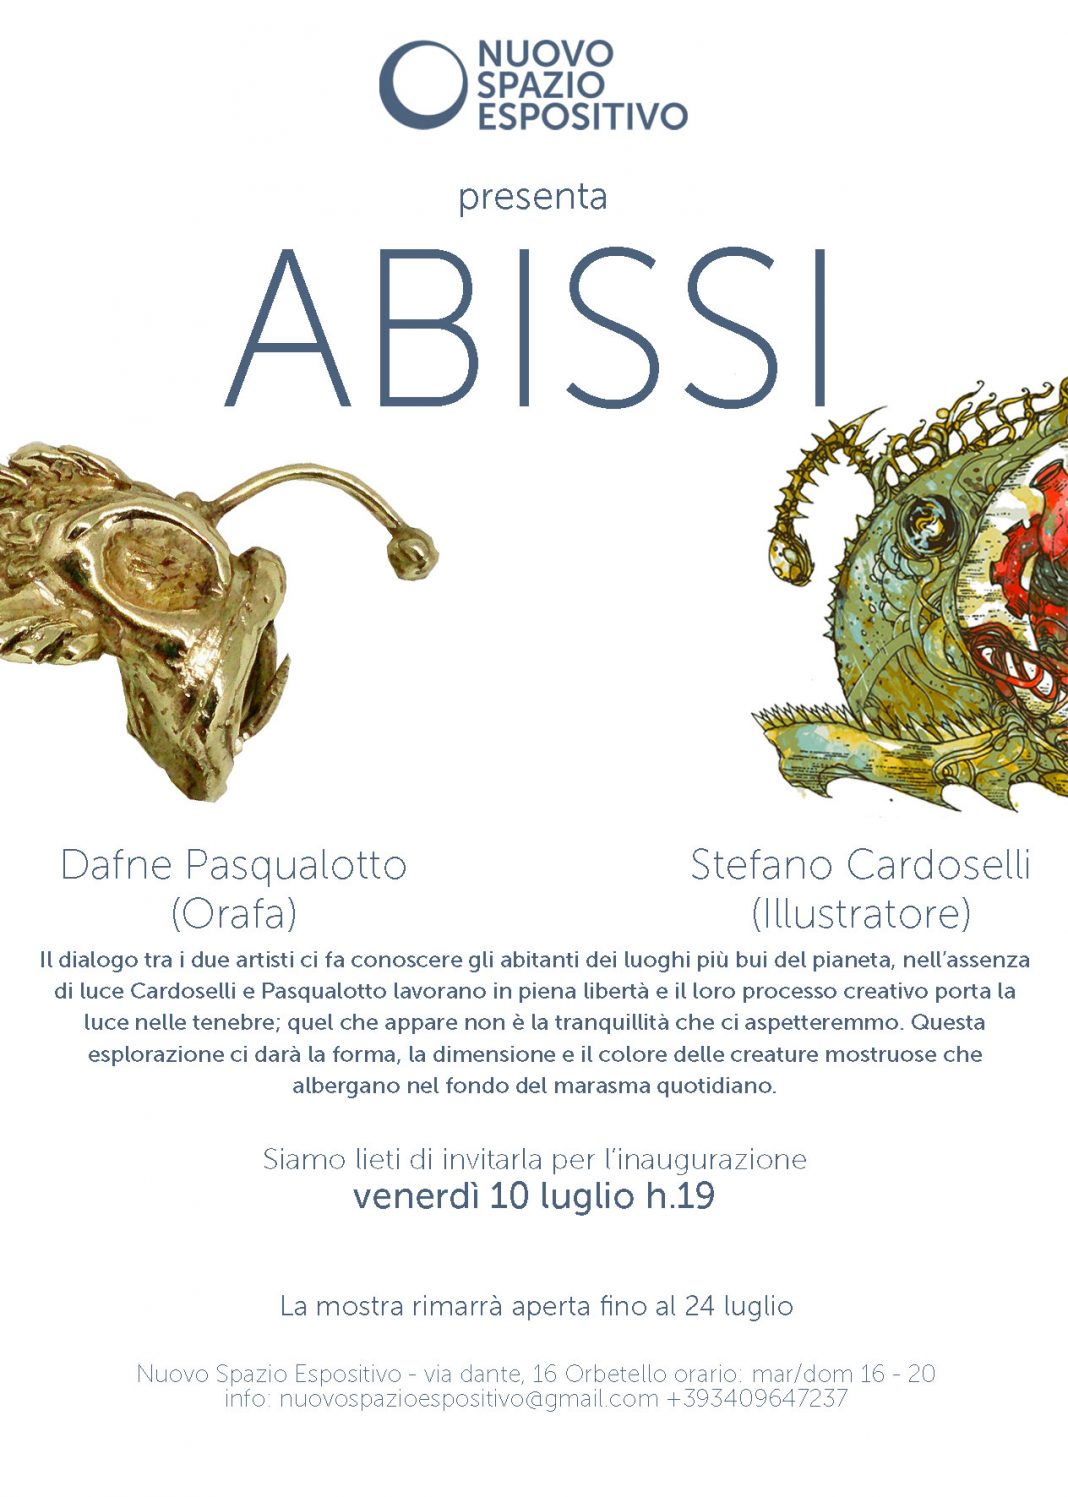 Stefano Cardoselli / Dafne Pasqualotto – Abissihttps://www.exibart.com/repository/media/eventi/2015/07/stefano-cardoselli-dafne-pasqualotto-8211-abissi-2-1068x1497.jpg